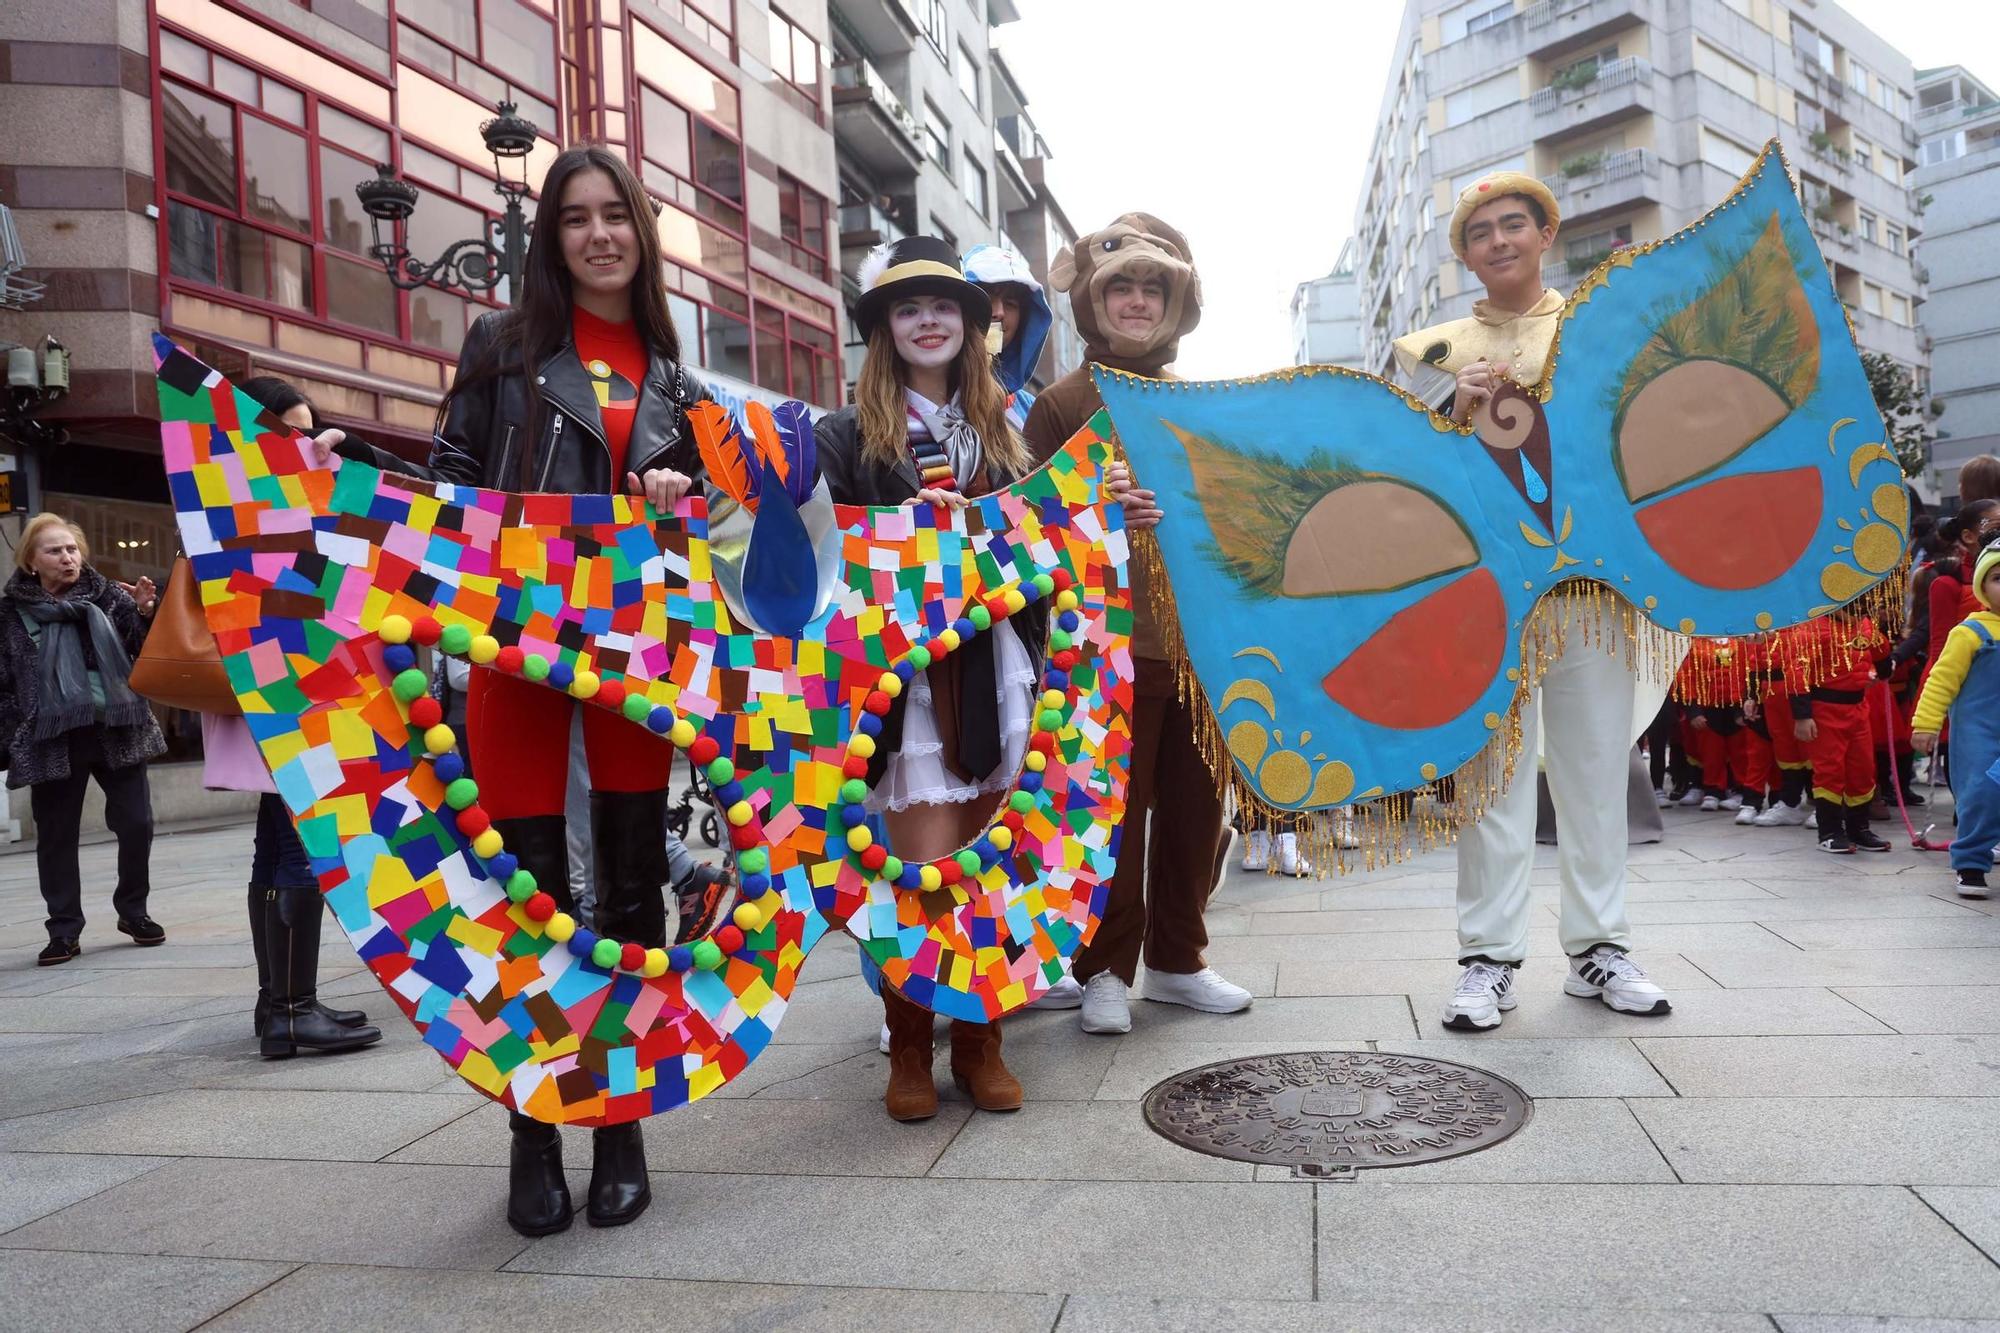 El desfile del colegio San Francisco inaugura el carnaval en Vilagarcía